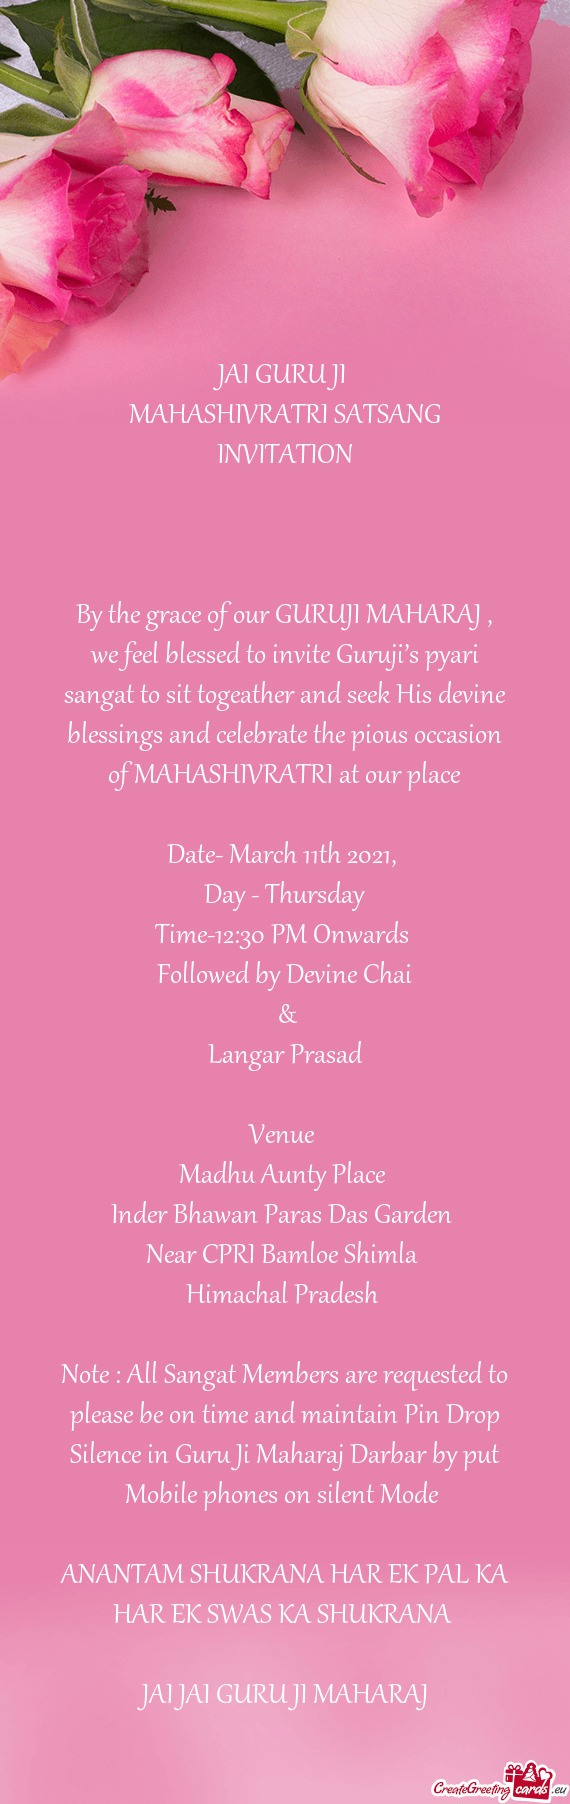 MAHASHIVRATRI SATSANG INVITATION